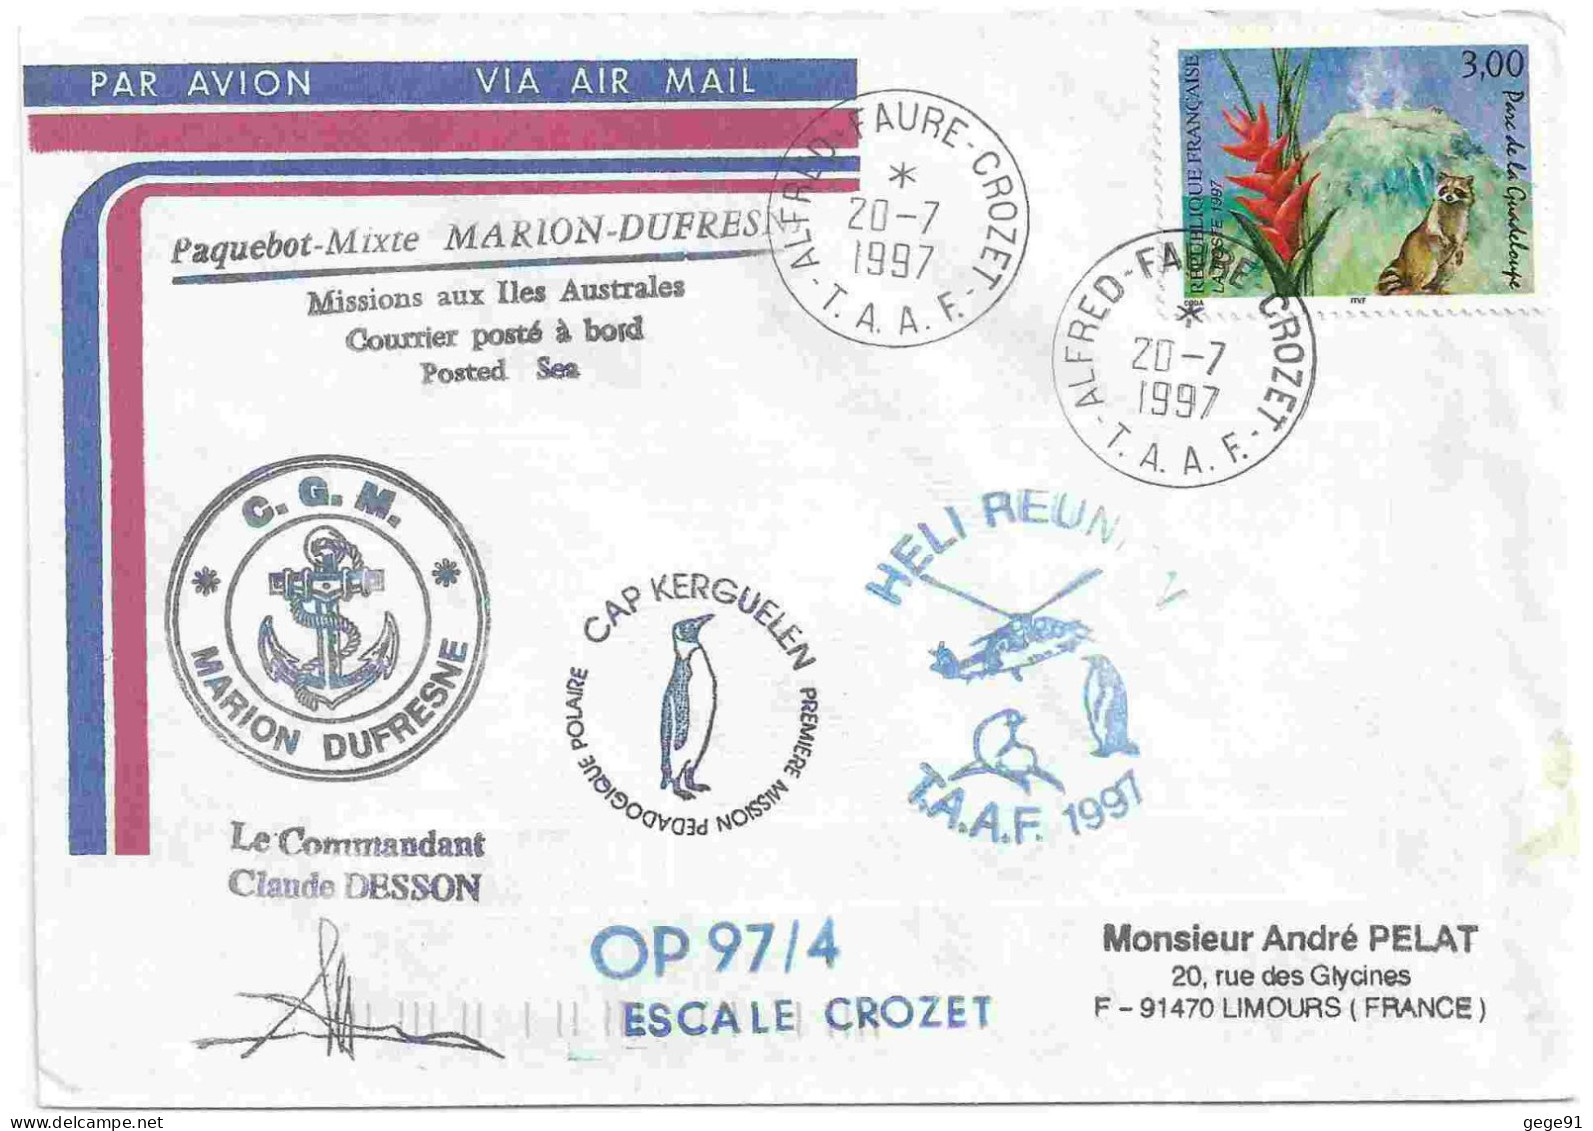 YT 3055 Parc De La Guadeloupe - Volcan - Posté à Bord Du MD - Héli Réunion - Alfred Faure Crozet - 20/07/1997 - Briefe U. Dokumente